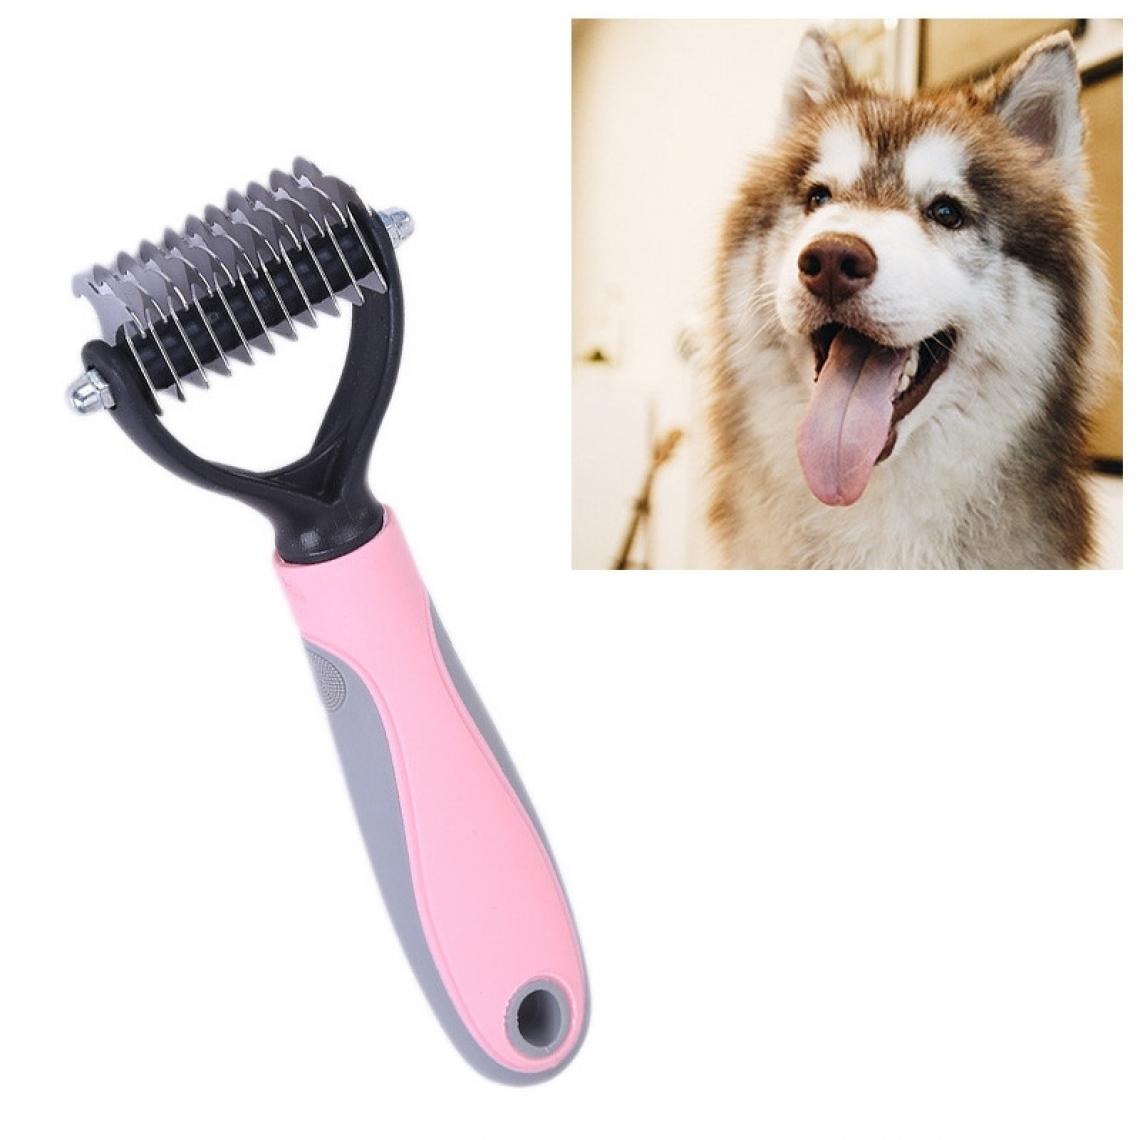 Wewoo - Pet Comb Beauty Cleaning Supplies Dog Peigne pour chien en acier inoxydabletaille 18x5cm rose - Hygiène et soin pour chat